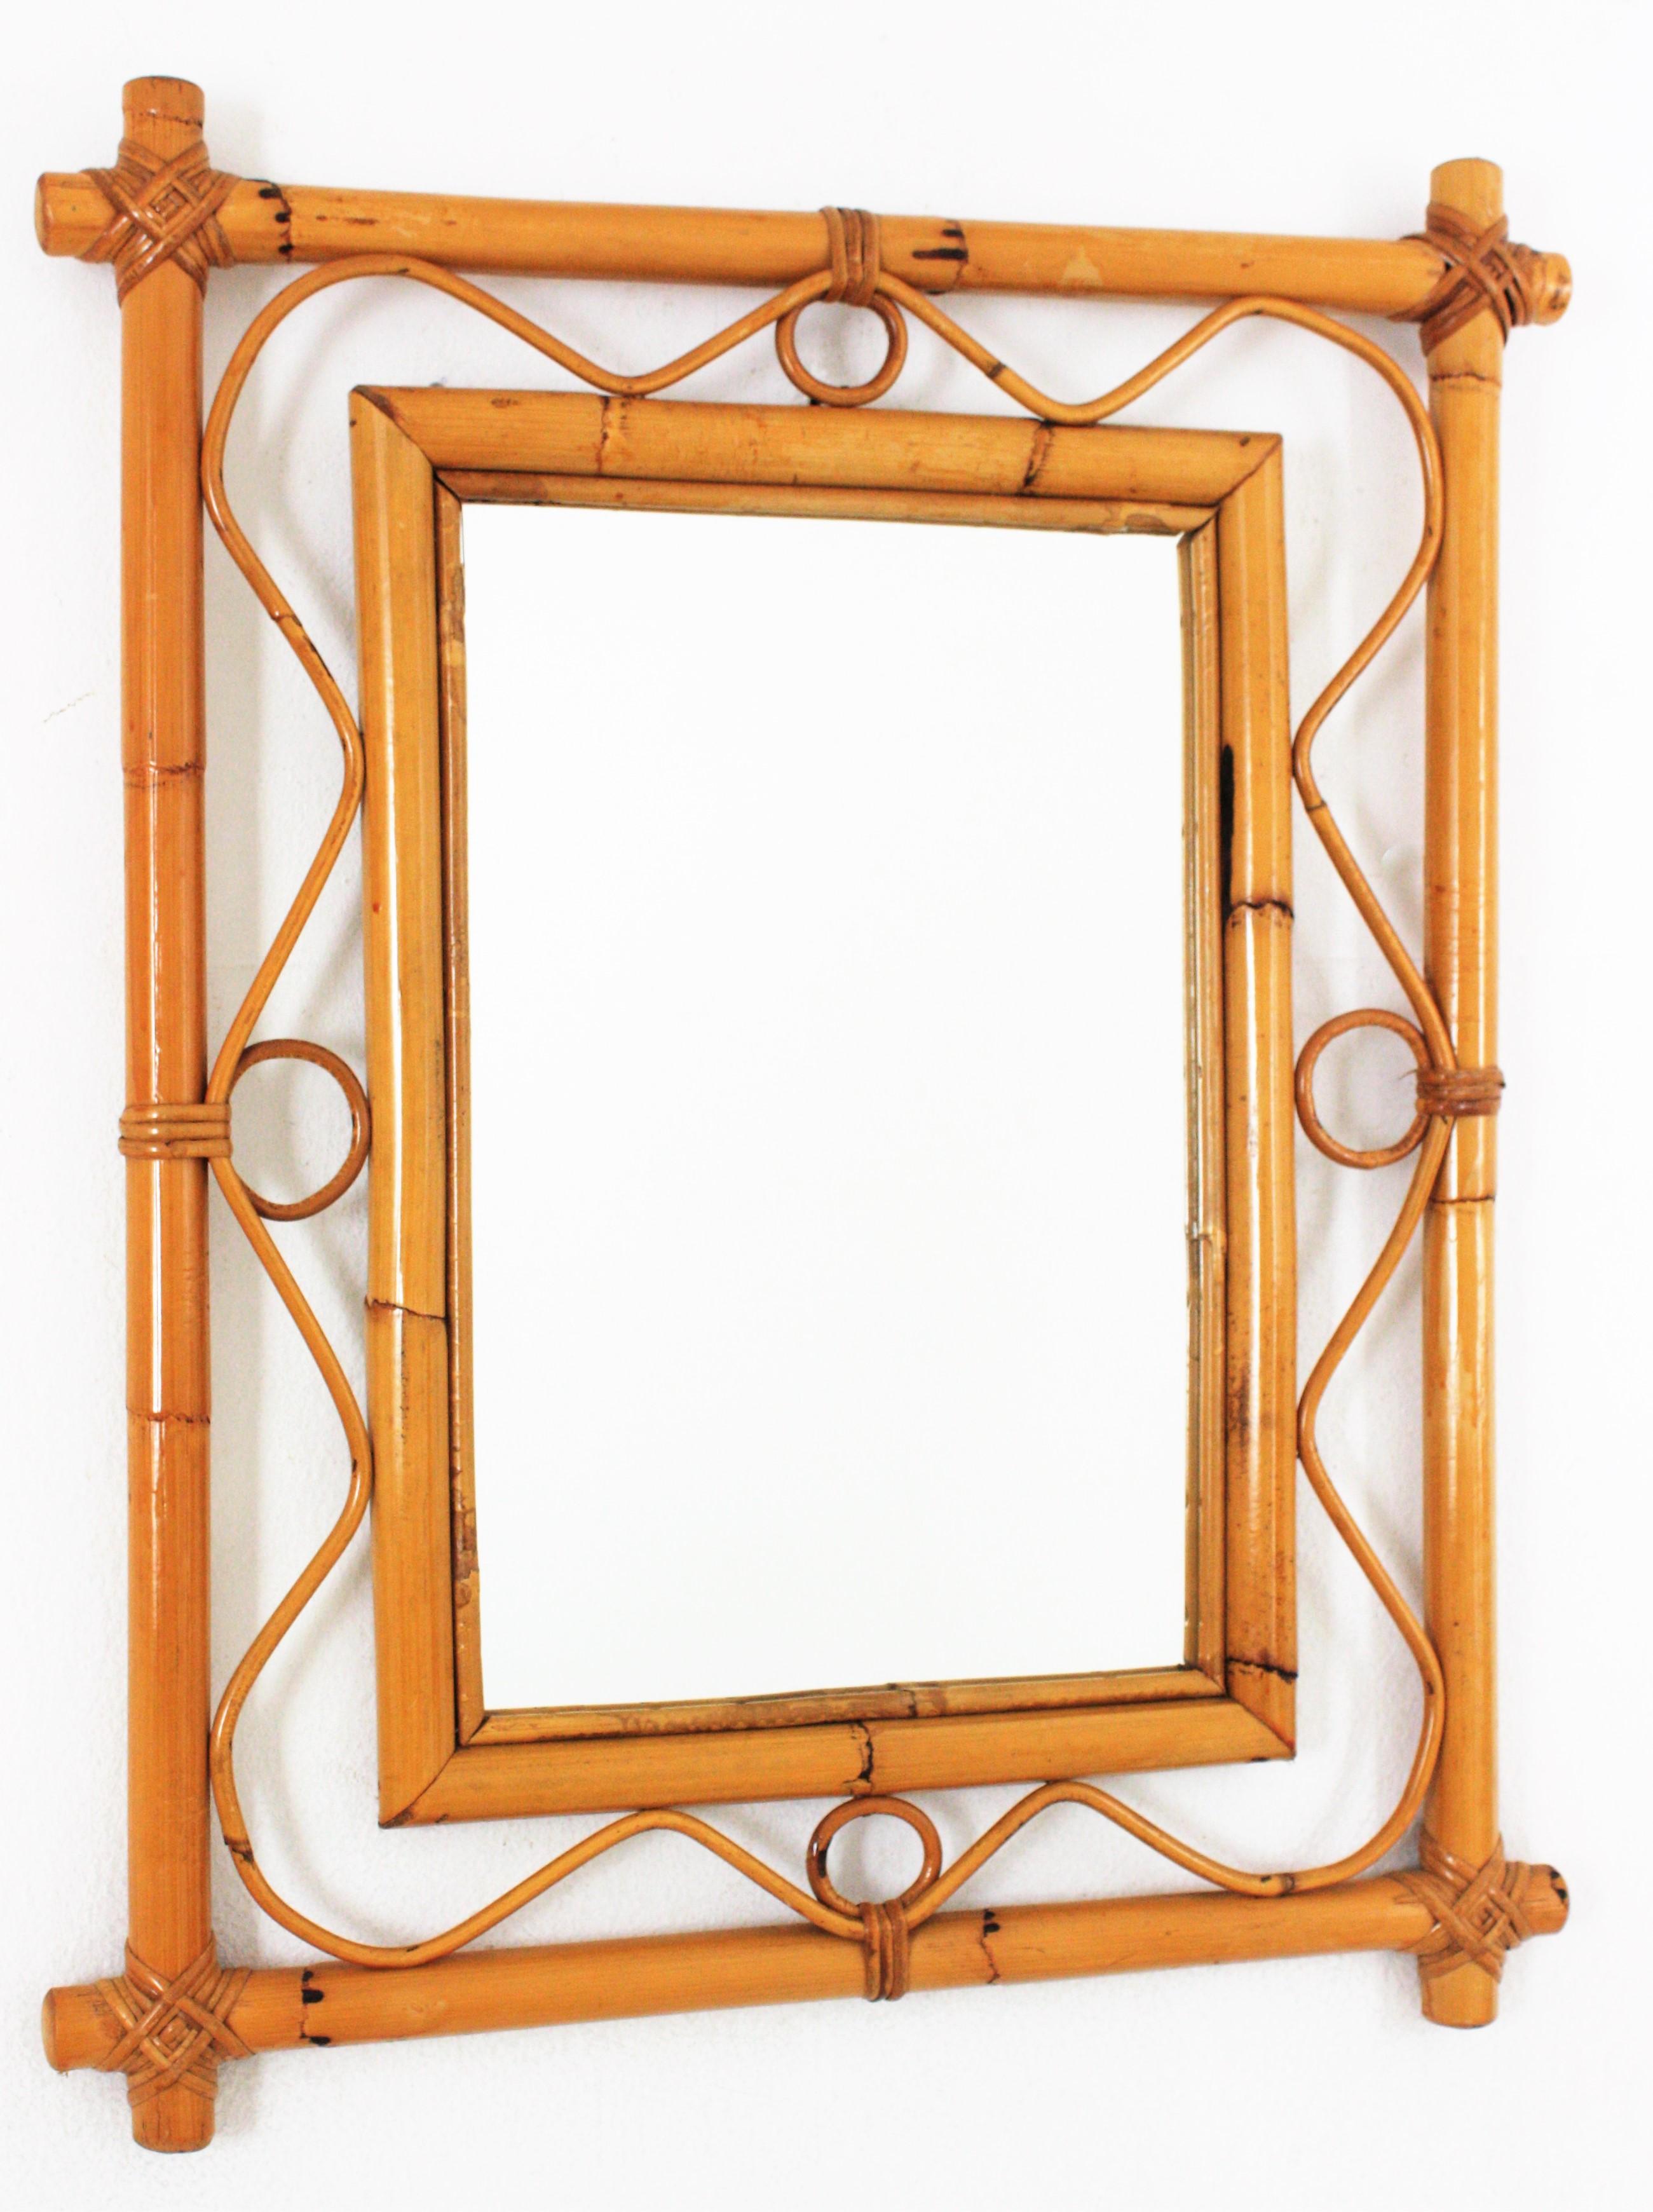 Miroir rectangulaire du milieu du siècle, Rattan & Bamboo
Miroir en rotin de bambou fabriqué à la main dans le style Franco Albini de la modernité du milieu du siècle. Italie, années 1960.
Ce miroir présente un double cadre rectangulaire en bambou